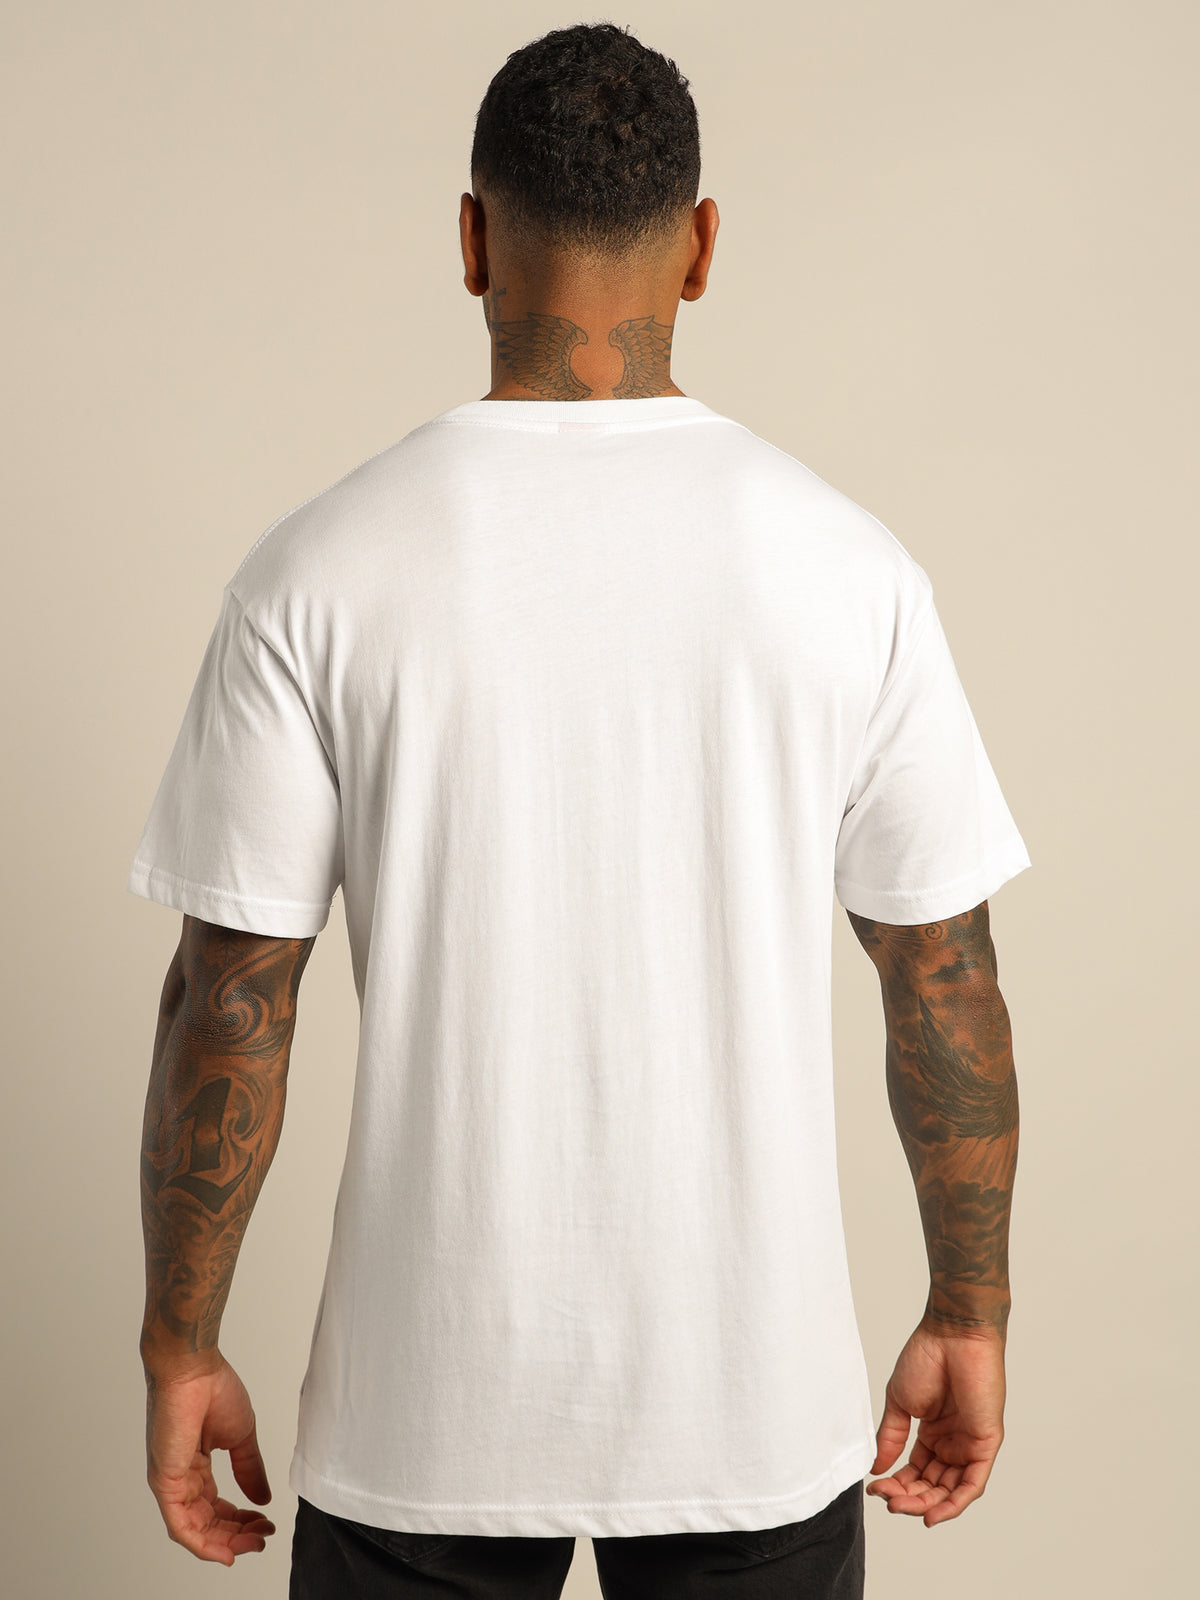 Thrills Stamp Merch Fit T-Shirt in White